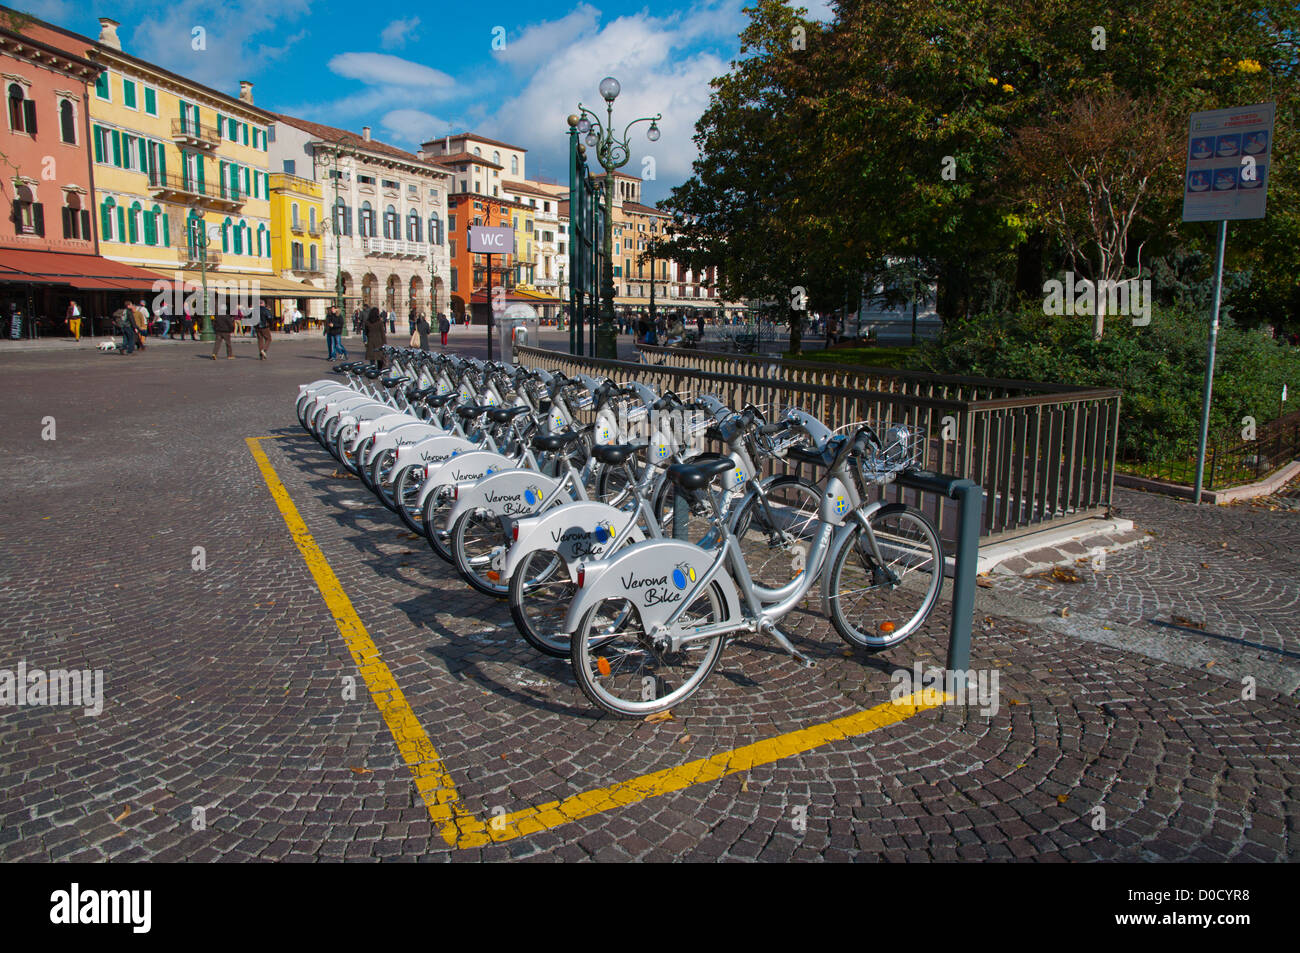 Vélo vélo Vérone scheme vélo Piazza Bra square centre ville de Vérone Vénétie Italie du nord Europe Banque D'Images